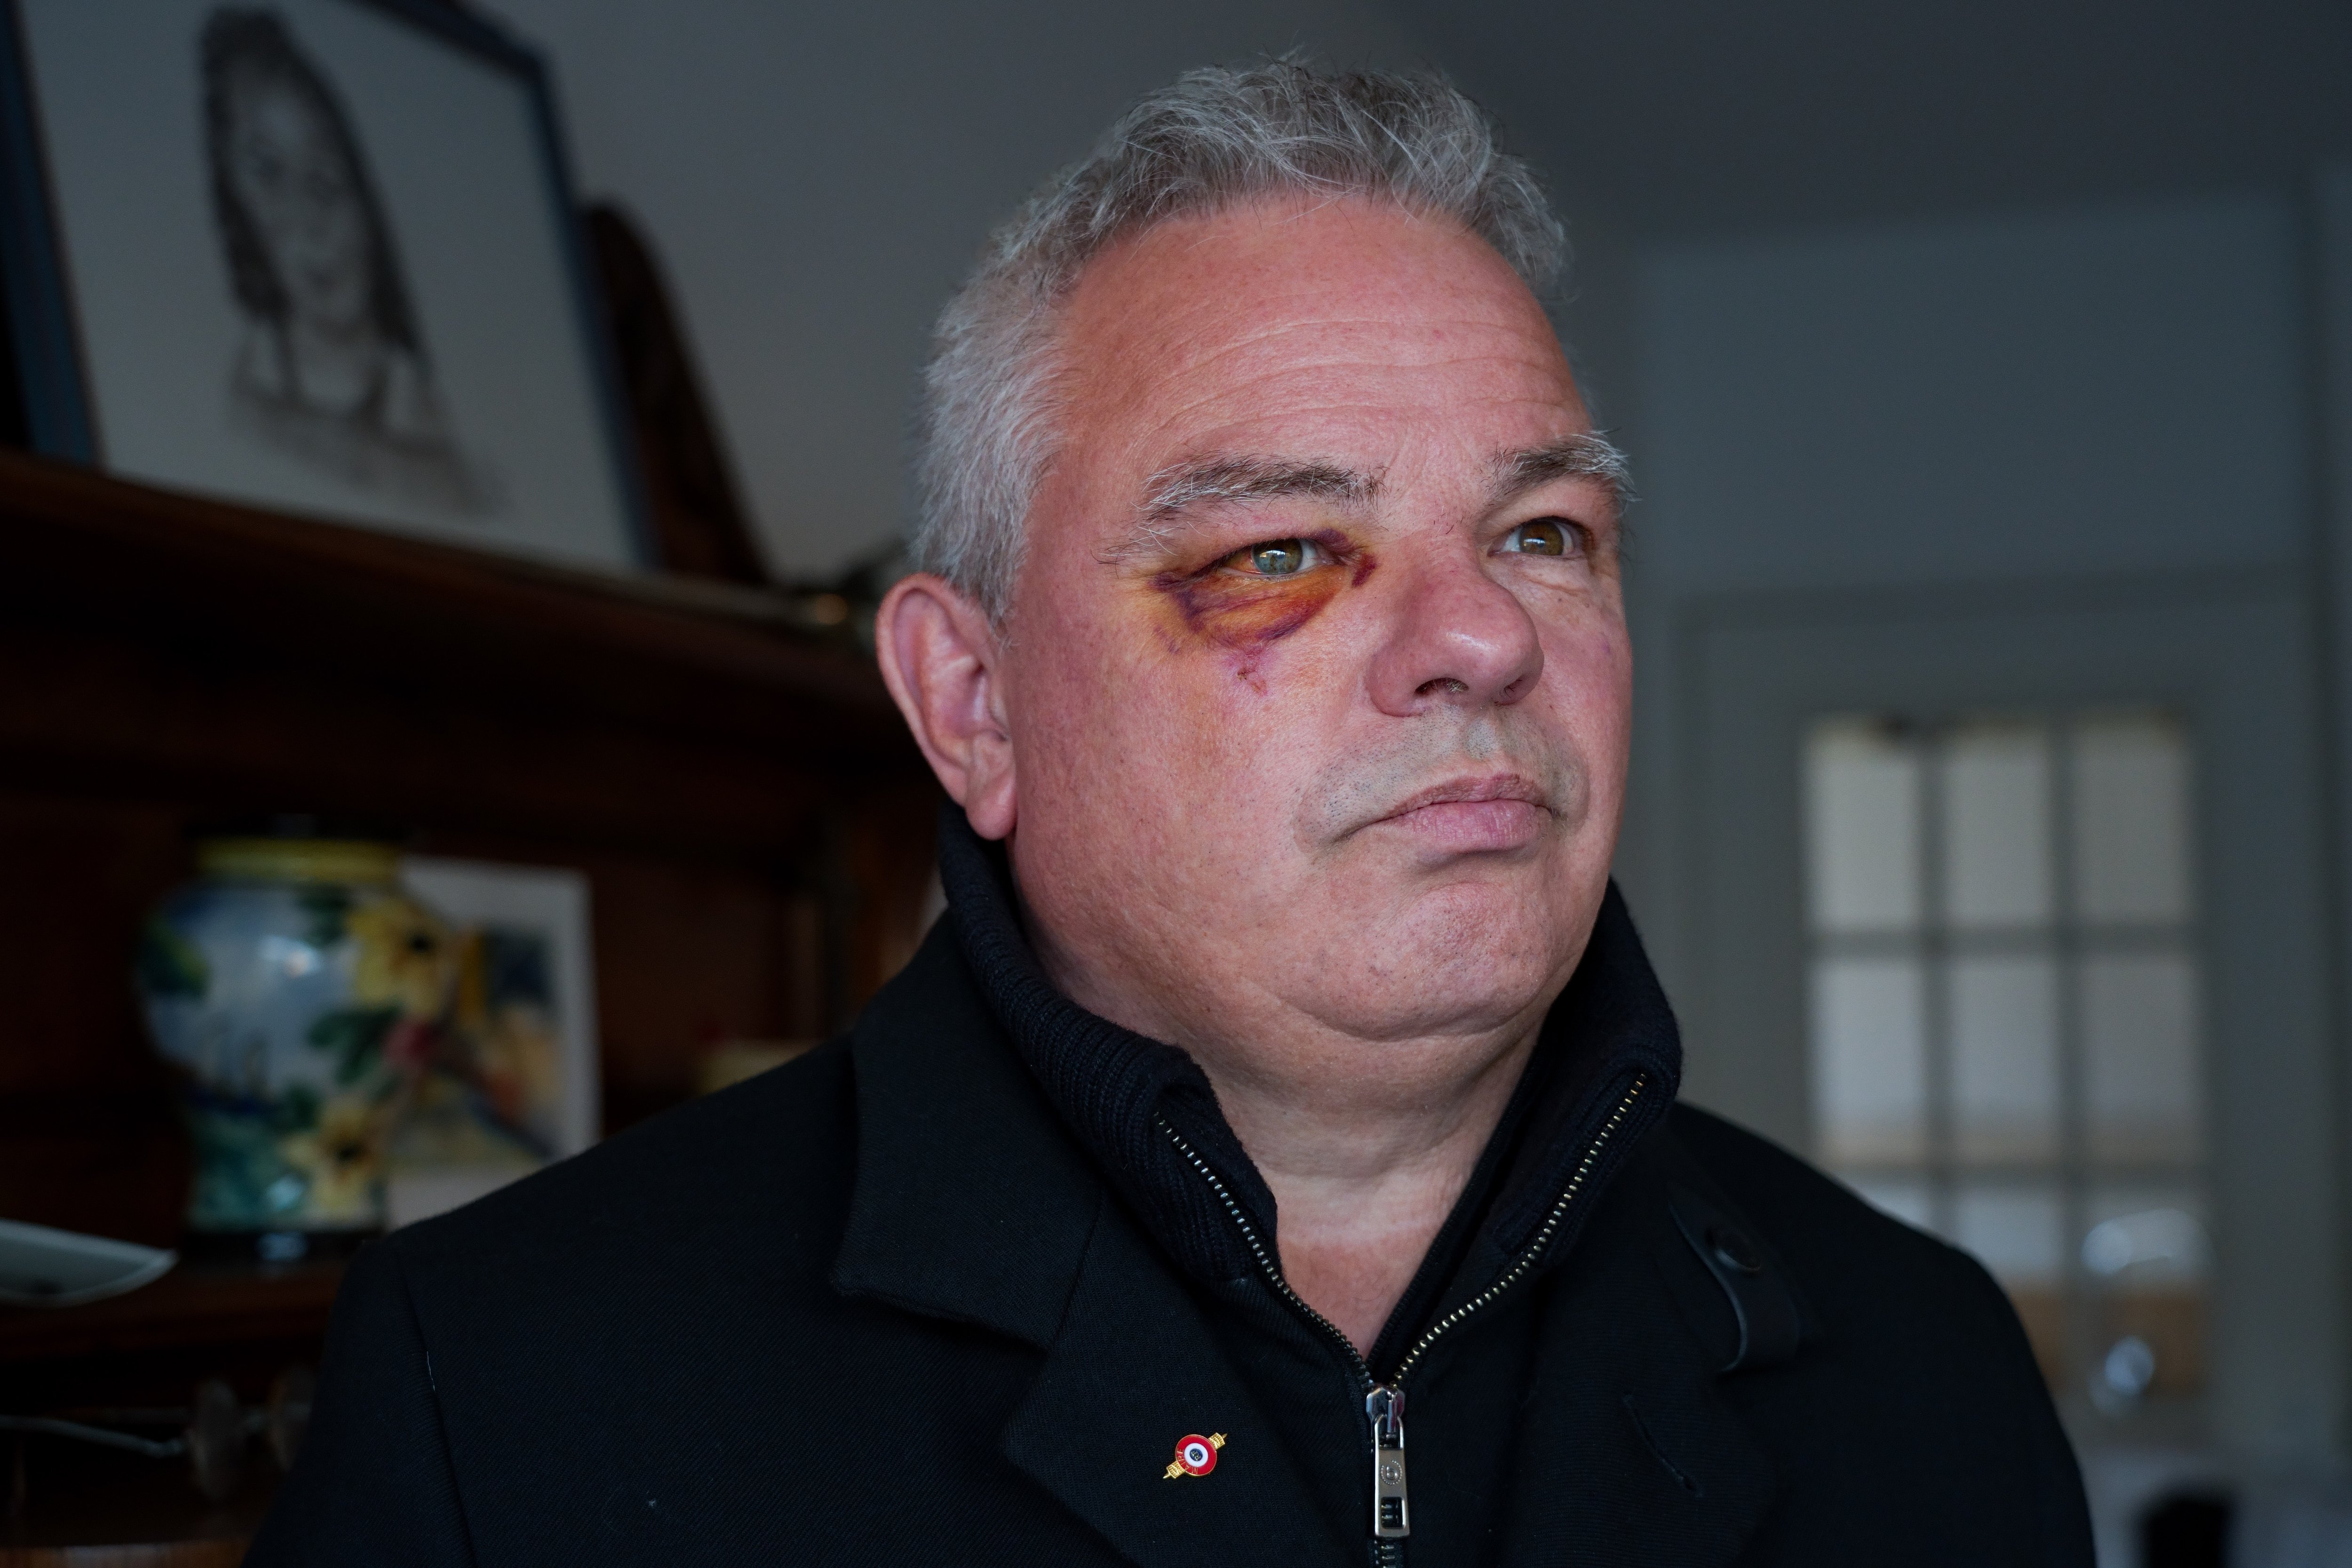 André Mondange, maire PCF de Péage-de-Roussillon, porte le manteau qui a attiré l'attention de ses agresseurs, arborant un pin's avec une coquarde qui montrait sa qualité de maire. LP/Thomas Pueyo